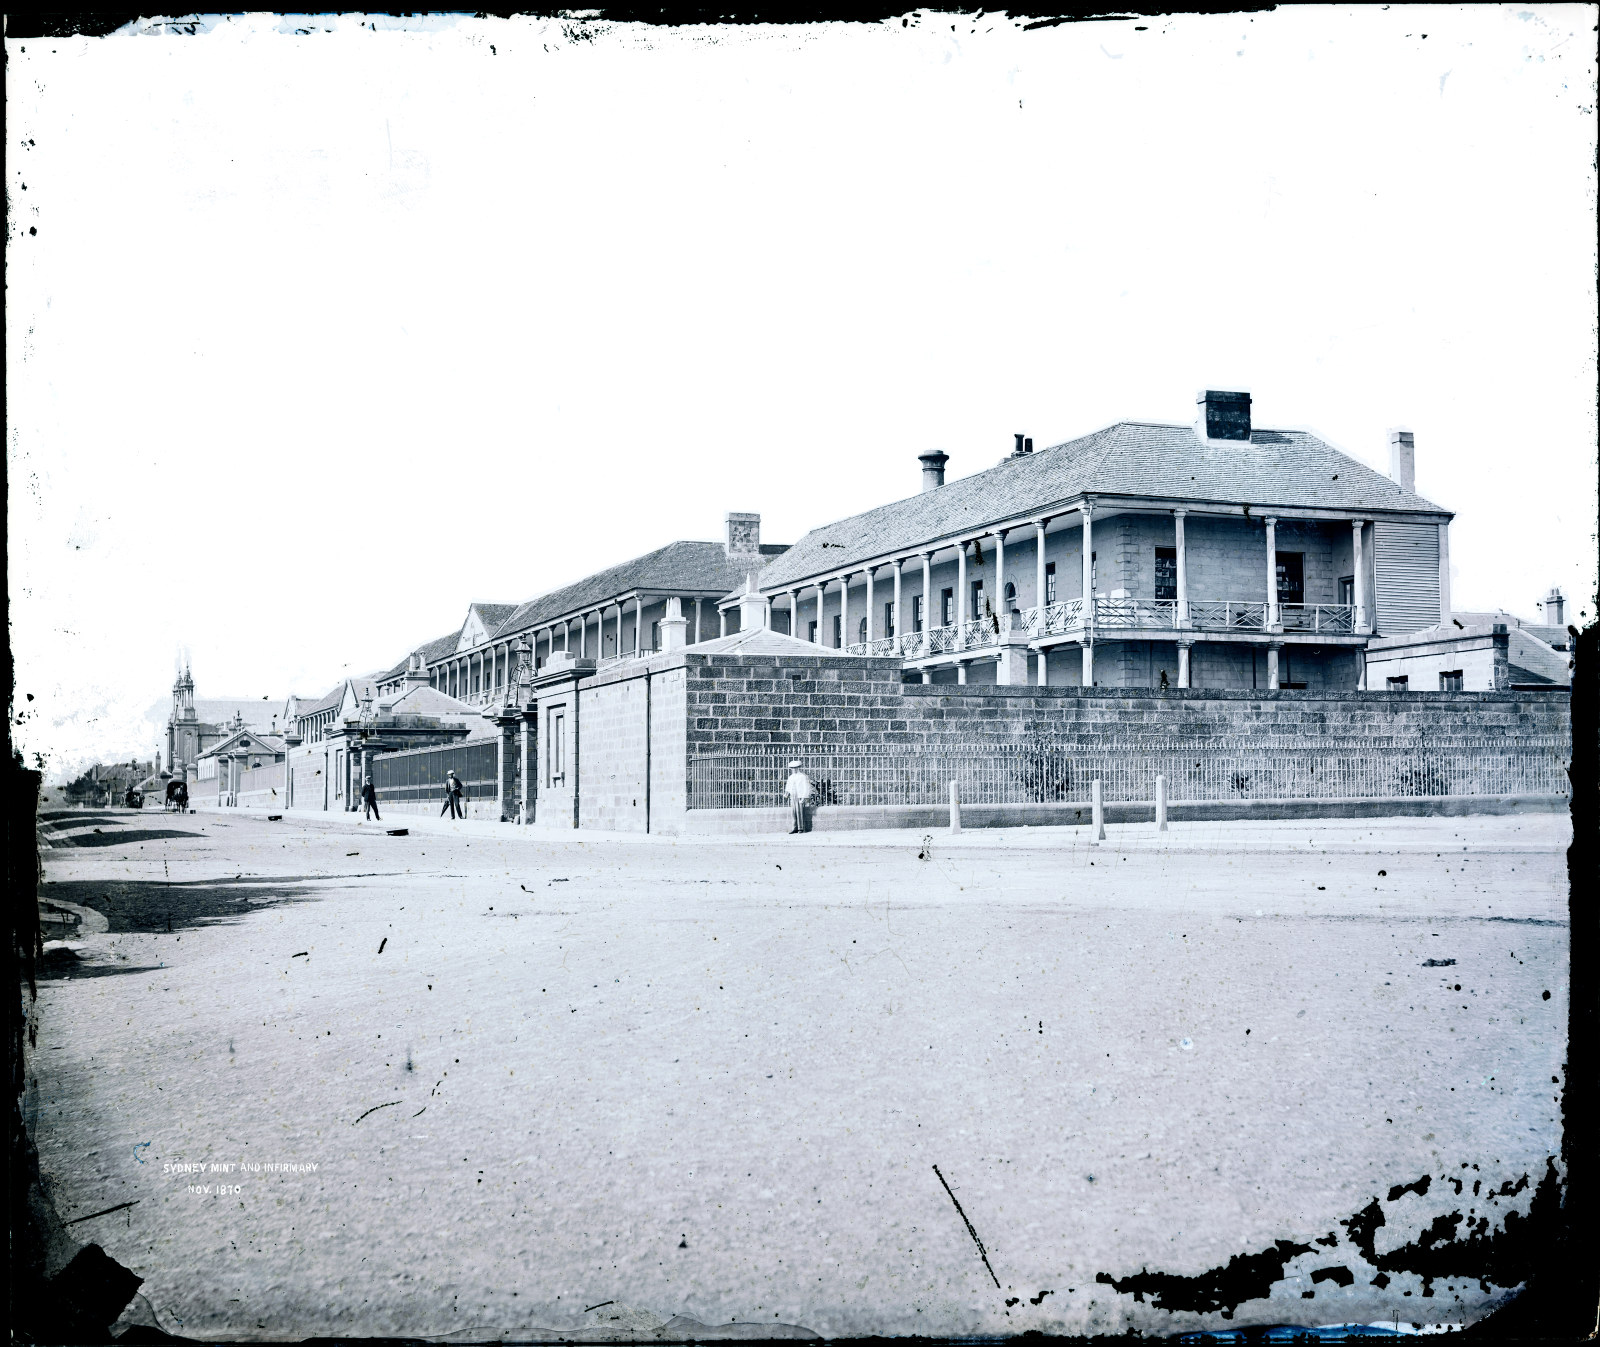 Sydney Mint and Infirmary, November 1870